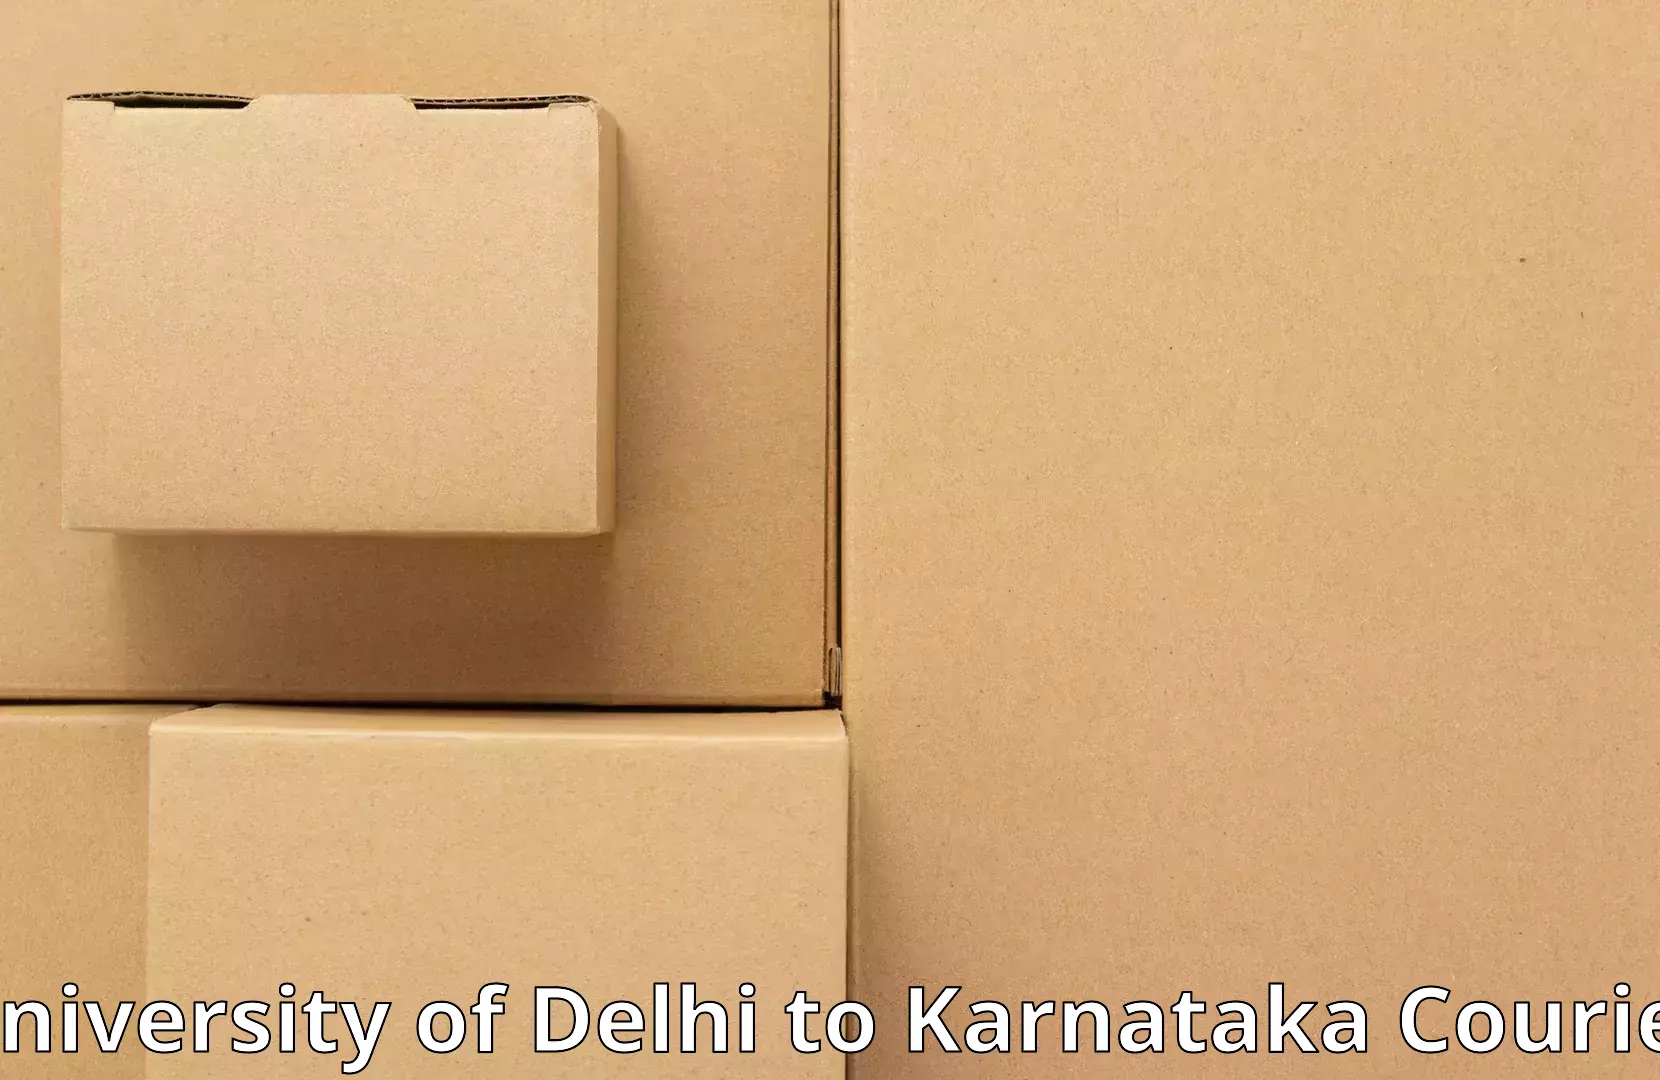 Moving and storage services University of Delhi to Karnataka